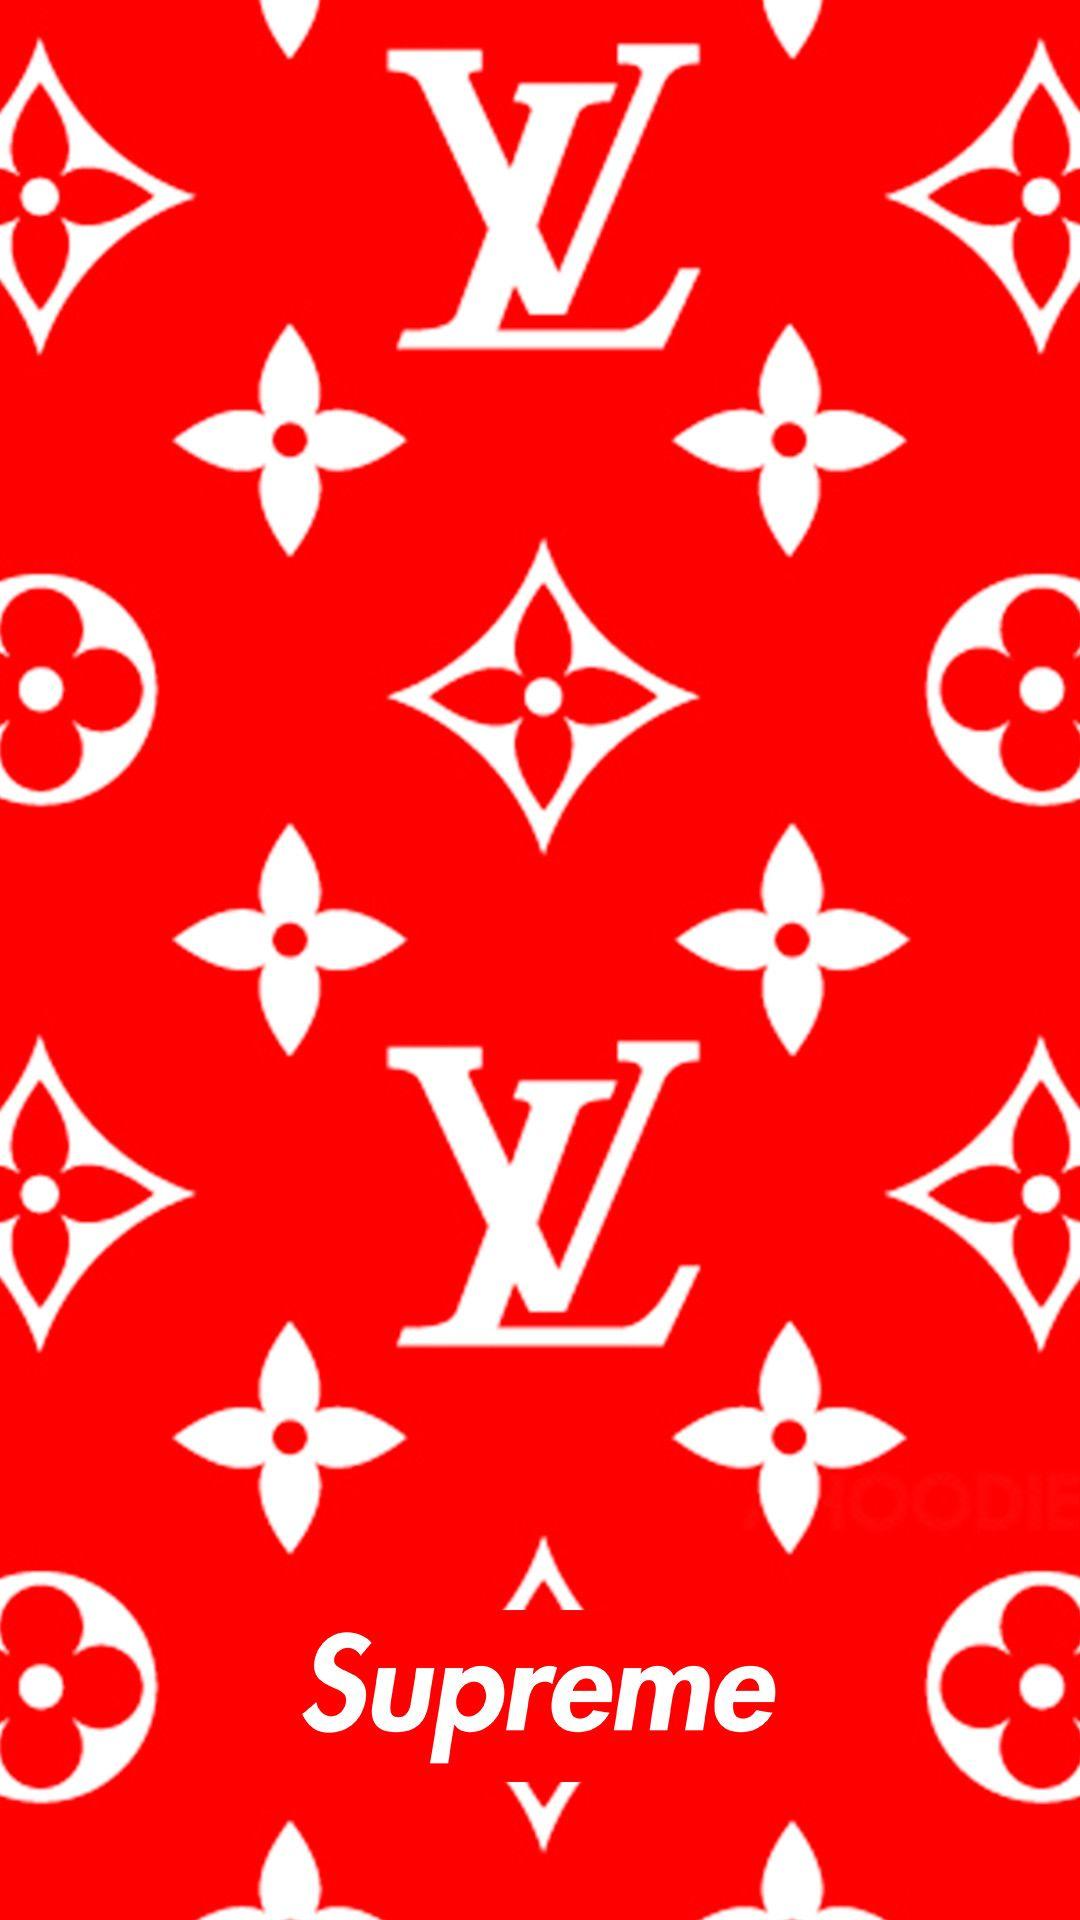 Louis Vuitton Supreme Logo - 1080x1920 Download Supreme x louis vuitton 1080 x 1920 Wallpapers ...